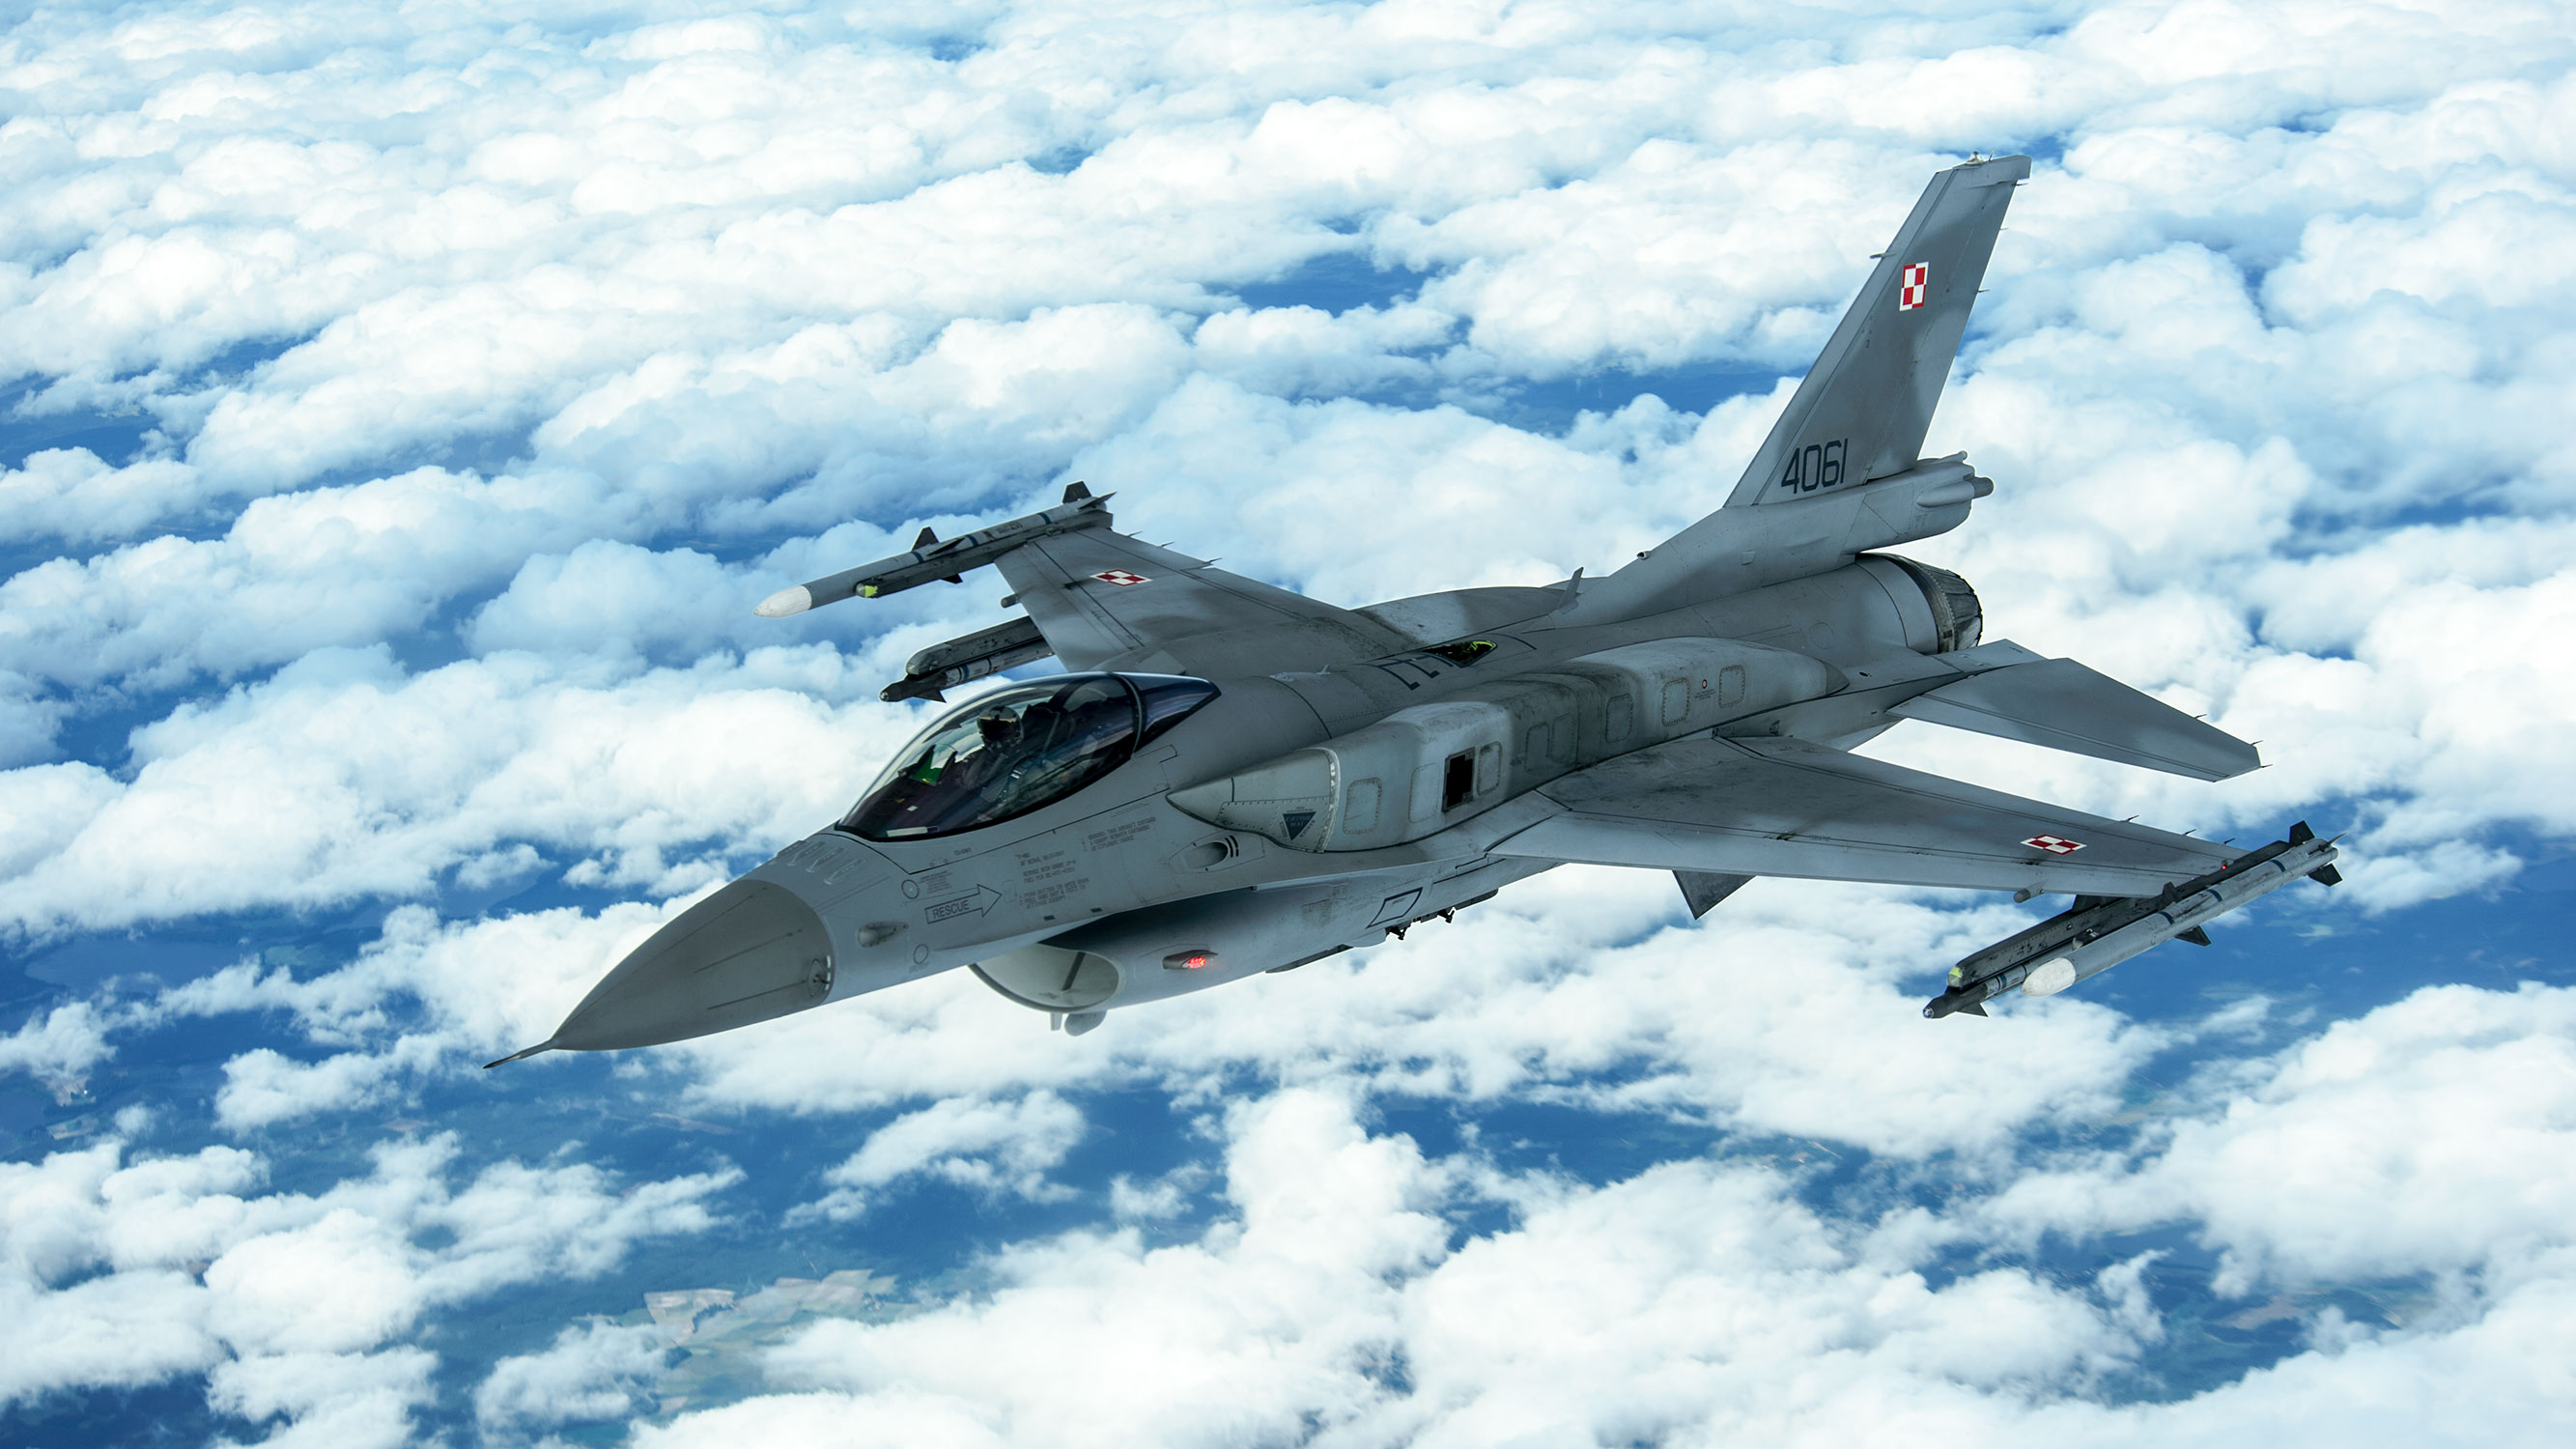 Polish F-16